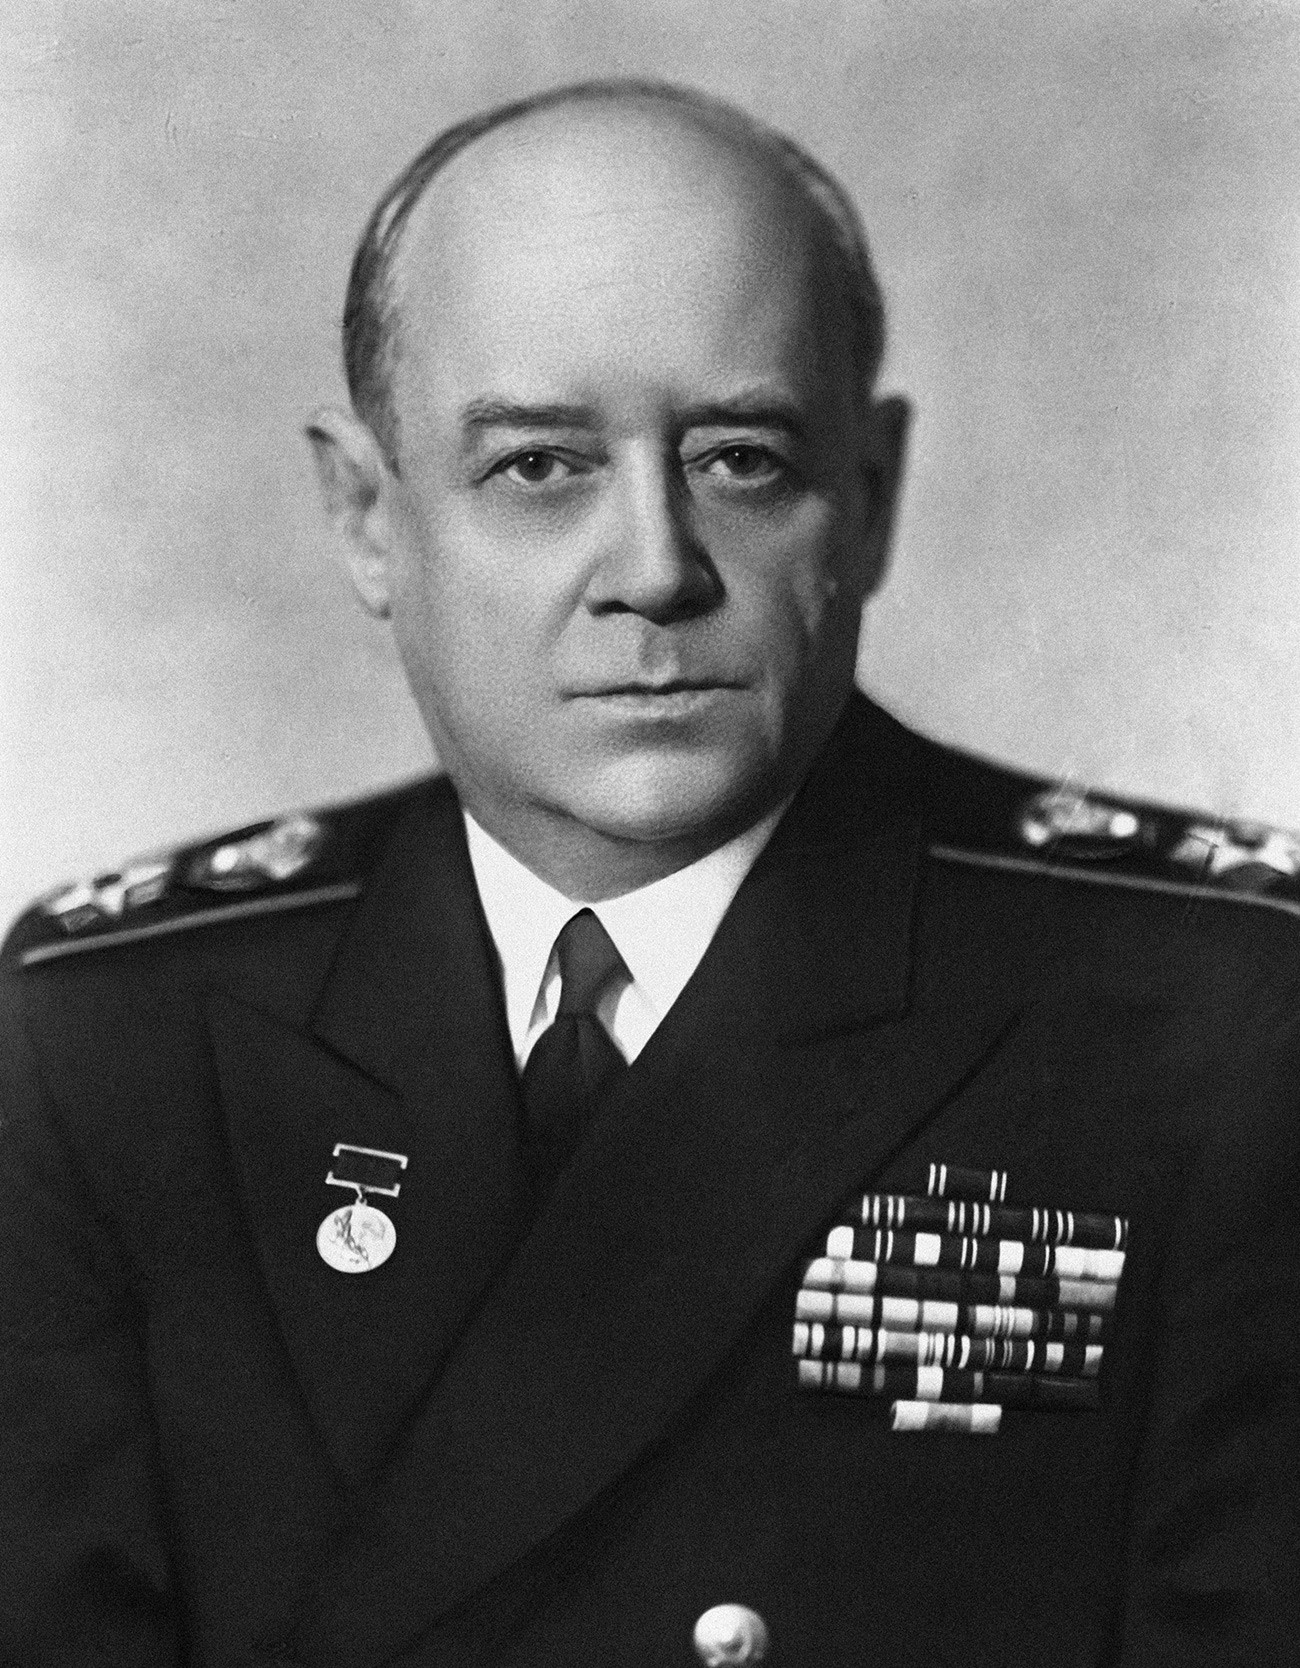 Almirante de la flota de la Unión Soviética Iván Stepanovich Isakov (1894-1967). Reproducción de una fotografía